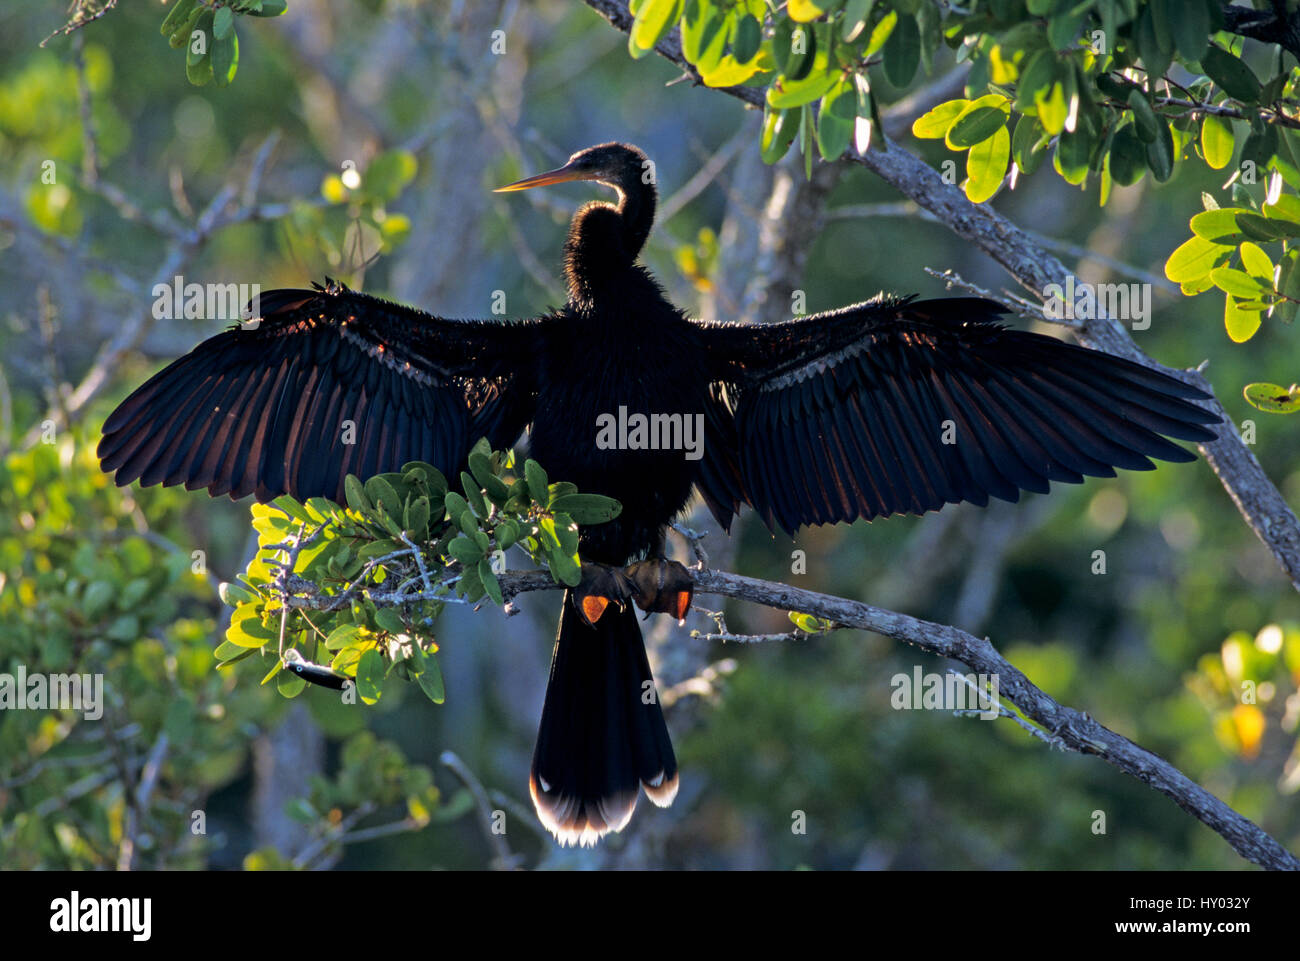 Les femelles du vert (Anhinga anhinga) sécher les ailes sur palétuvier, Ding Darling National Wildlife Refuge, Sanibel Island, Floride, USA. Décembre. Banque D'Images